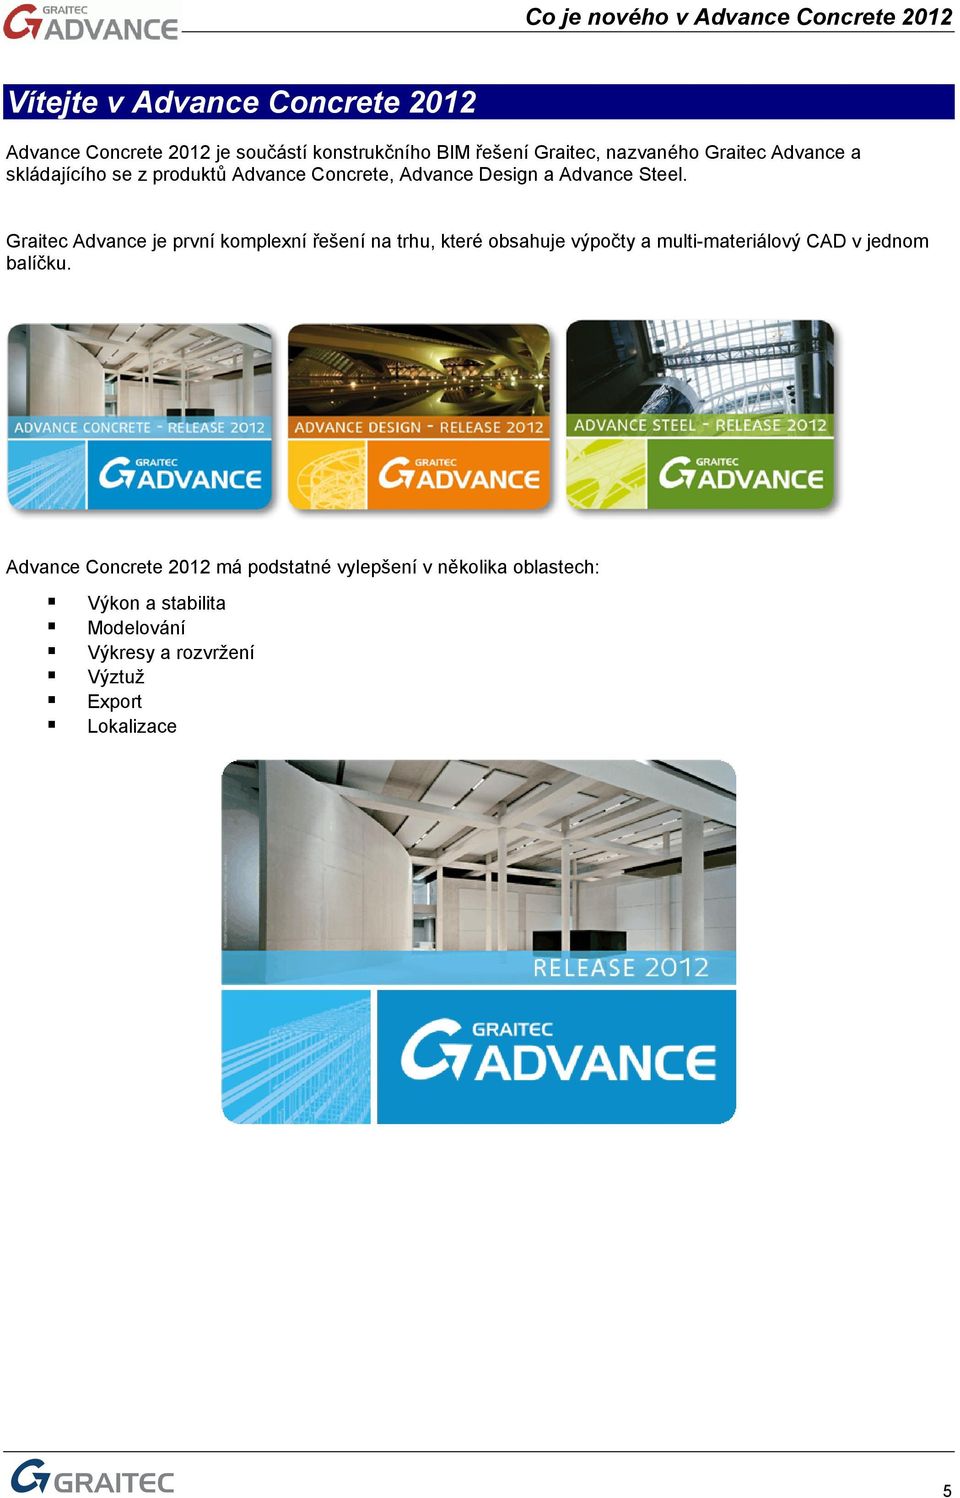 Graitec Advance je první komplexní řešení na trhu, které obsahuje výpočty a multi-materiálový CAD v jednom balíčku.